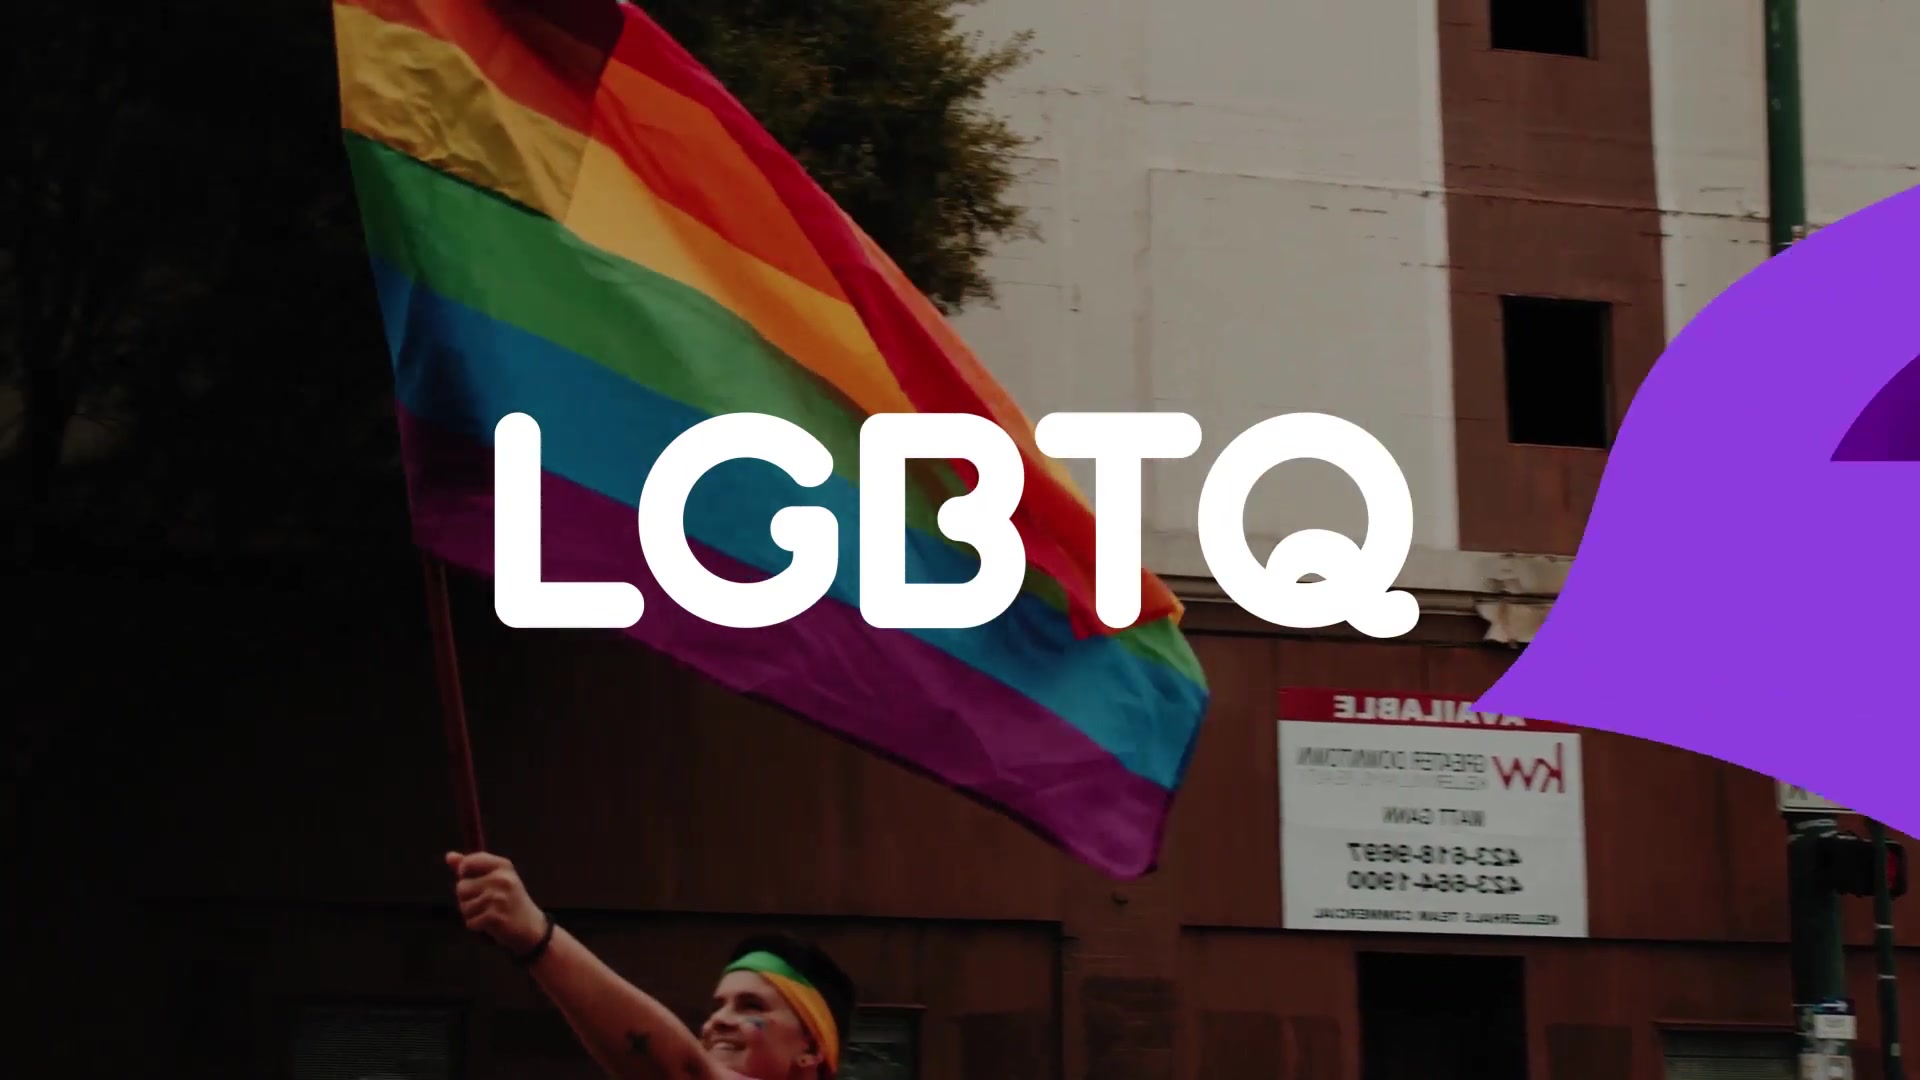 LGBTQ Titles And Scenes | Premiere Pro MOGRT Videohive 27823556 Premiere Pro Image 5